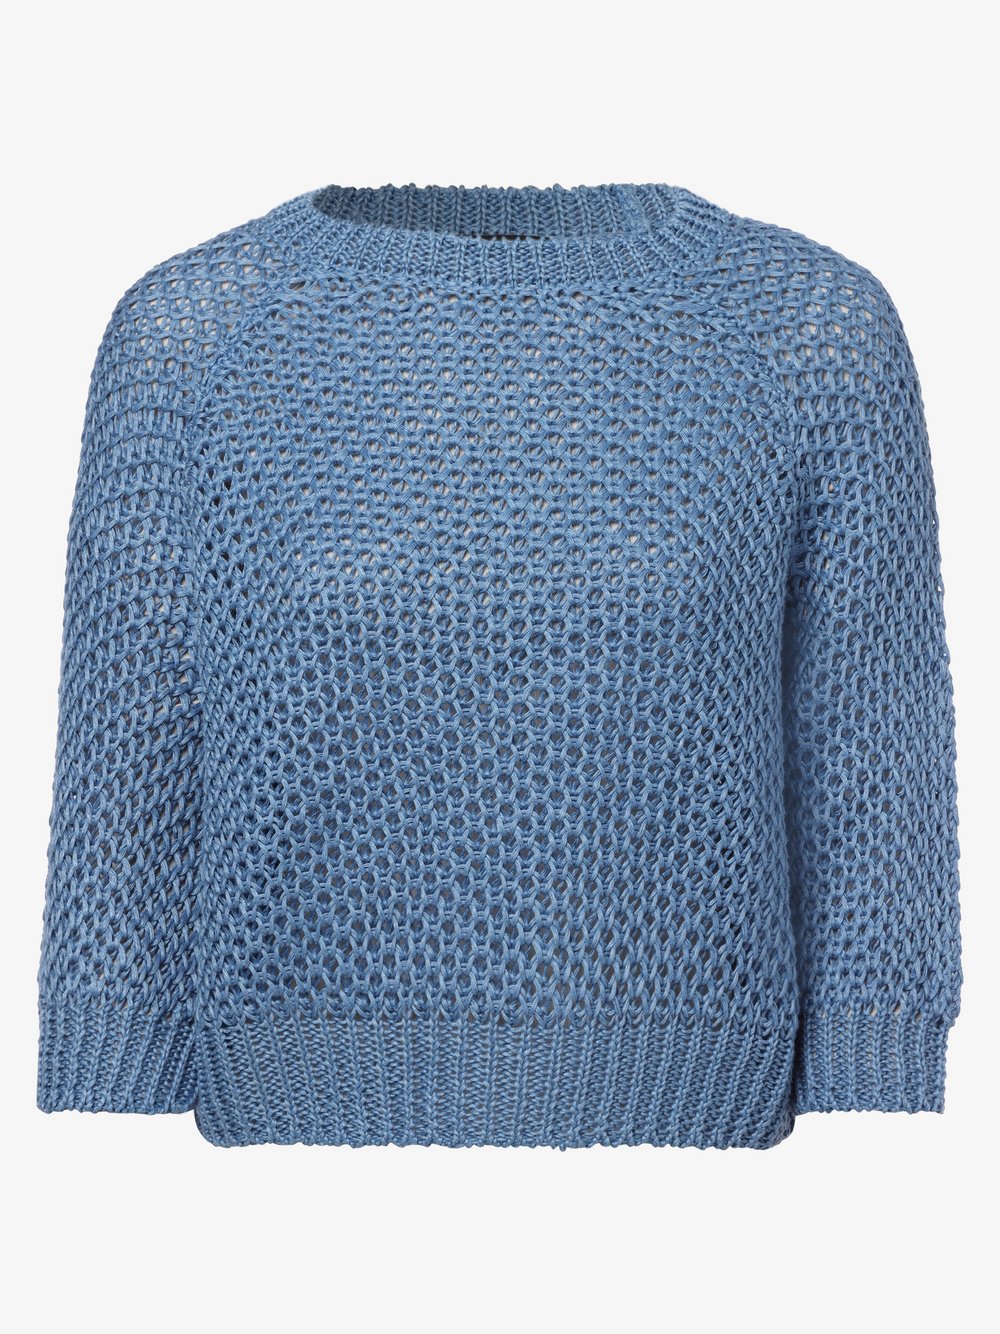 Max Mara Weekend - Damski sweter lniany – Ghiacci, niebieski